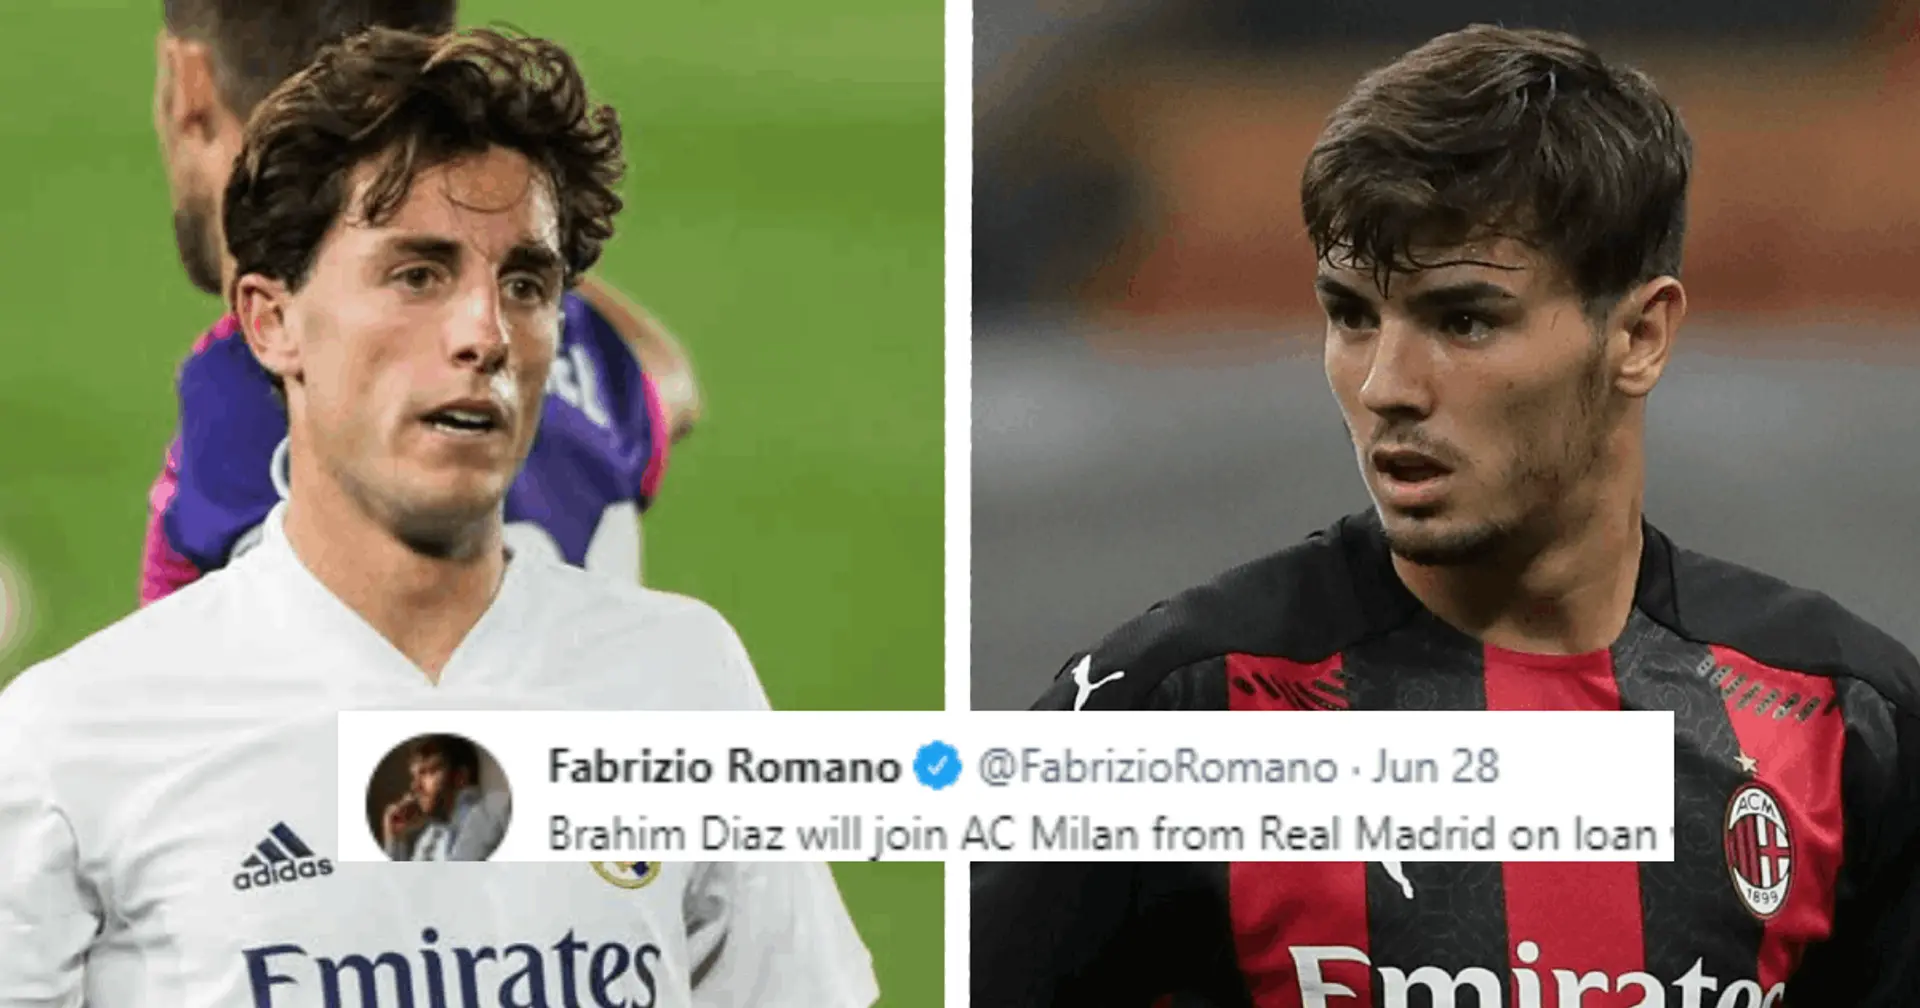 Fabrizio Romano révèle les détails de l'accord du Real Madrid avec Milan pour Brahim Diaz (fiabilité: 5 étoiles)